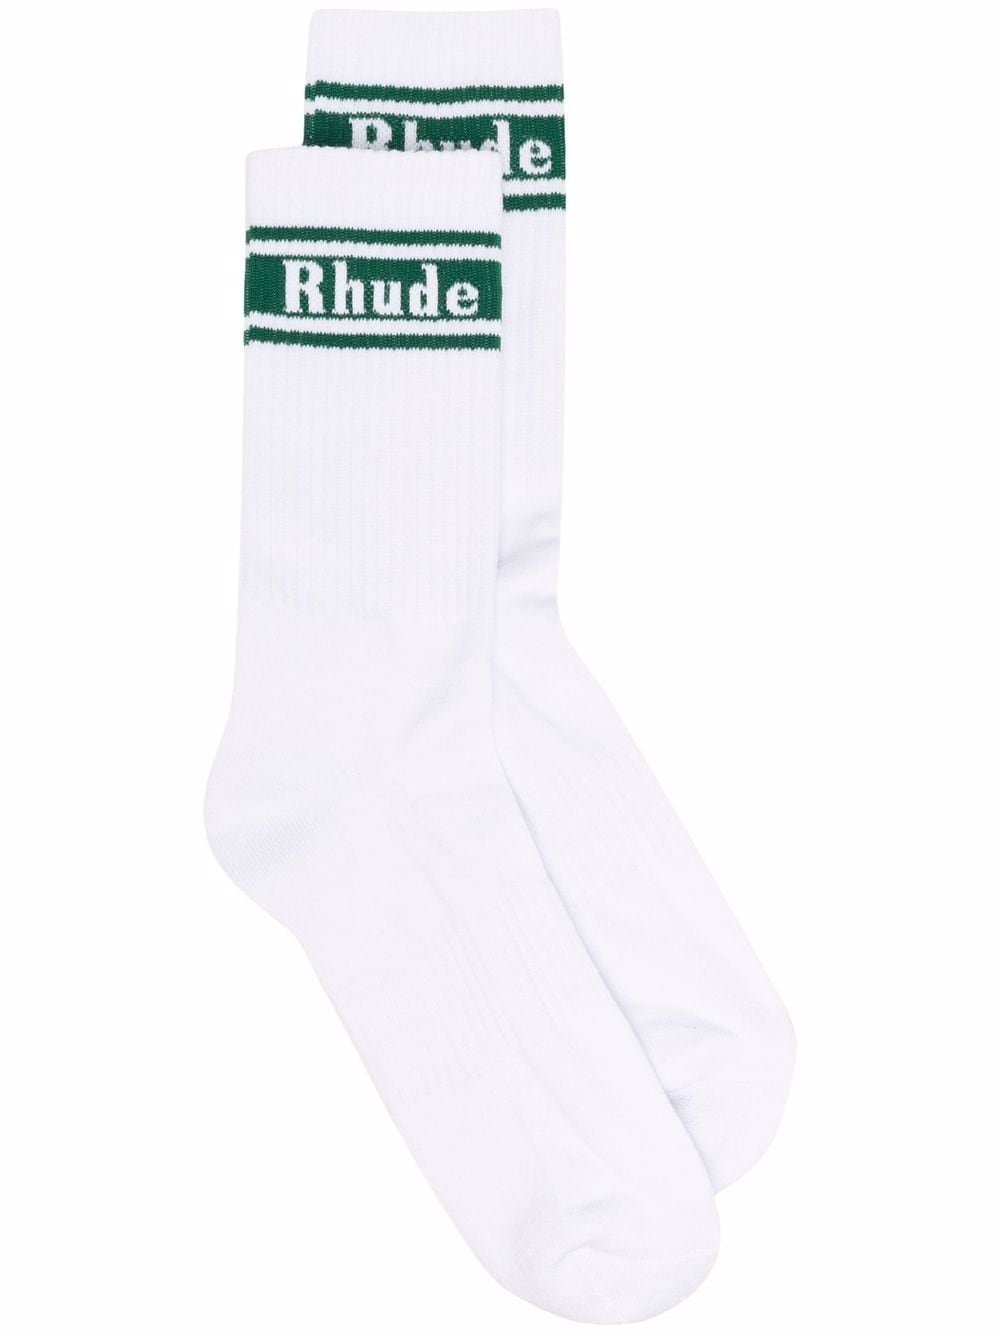 фото Rhude носки в рубчик с логотипом